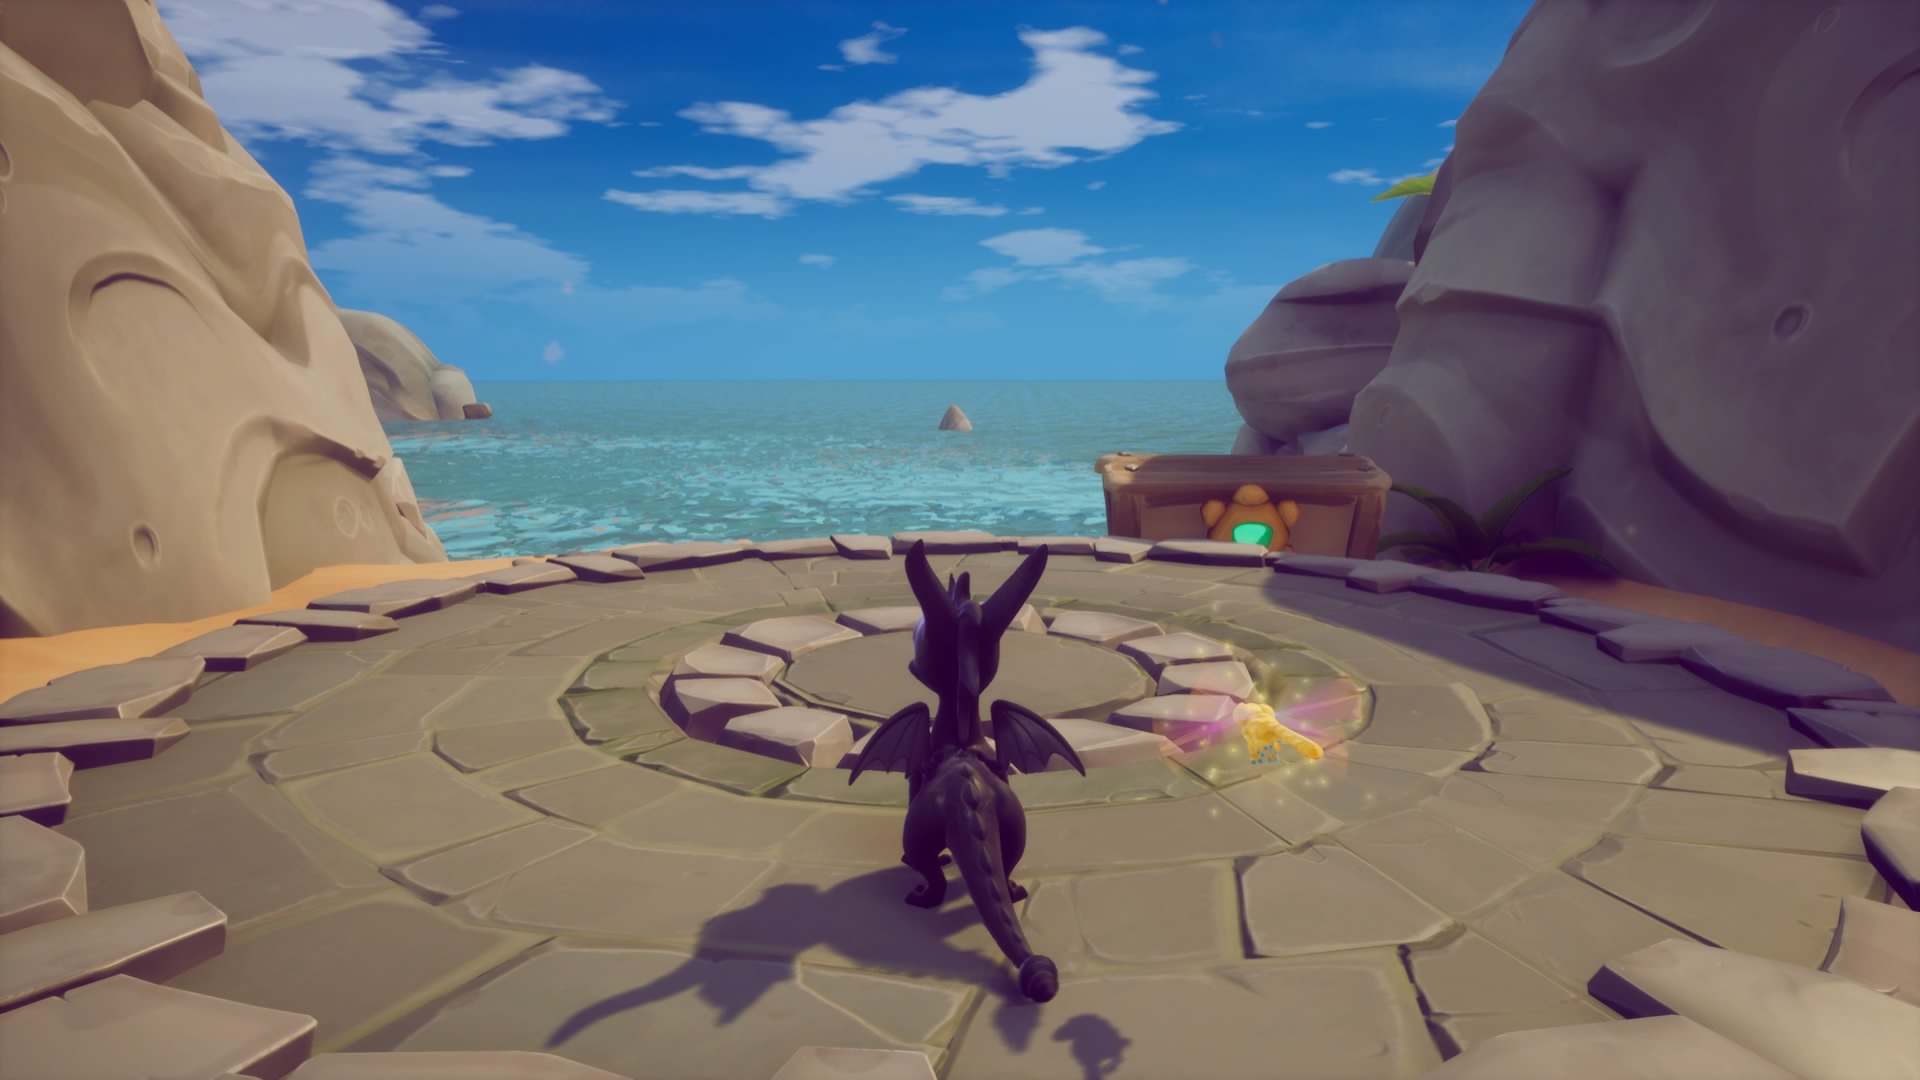 Spyro en Playa Soleada - Juego: "Spyro 2: En busca de los talismanes" de Reignited Trilogy